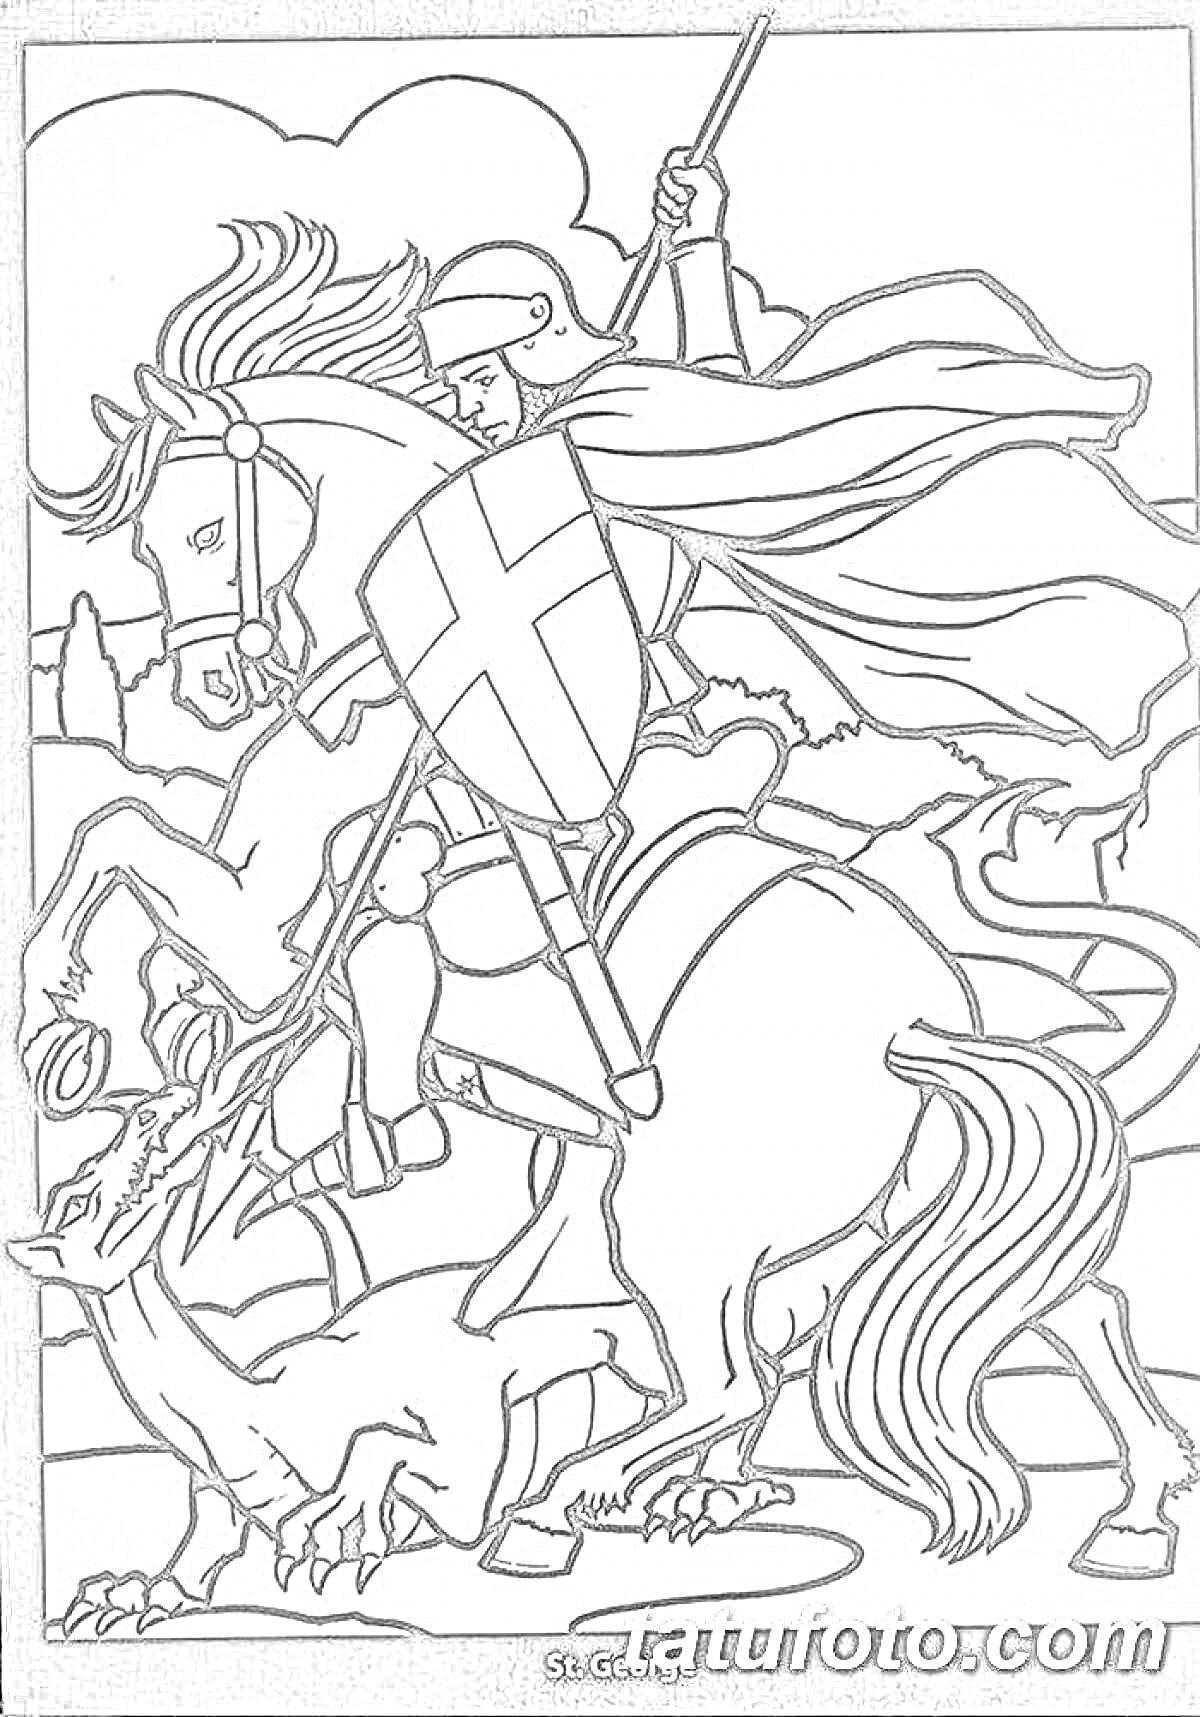 Раскраска Святой Георгий Победоносец на коне, сражающийся с драконом. На изображении - святой Георгий в шлеме и с копьем, на лошади, с щитом с крестом, поражающий дракона. В фоновом плане присутствуют облака и природа.